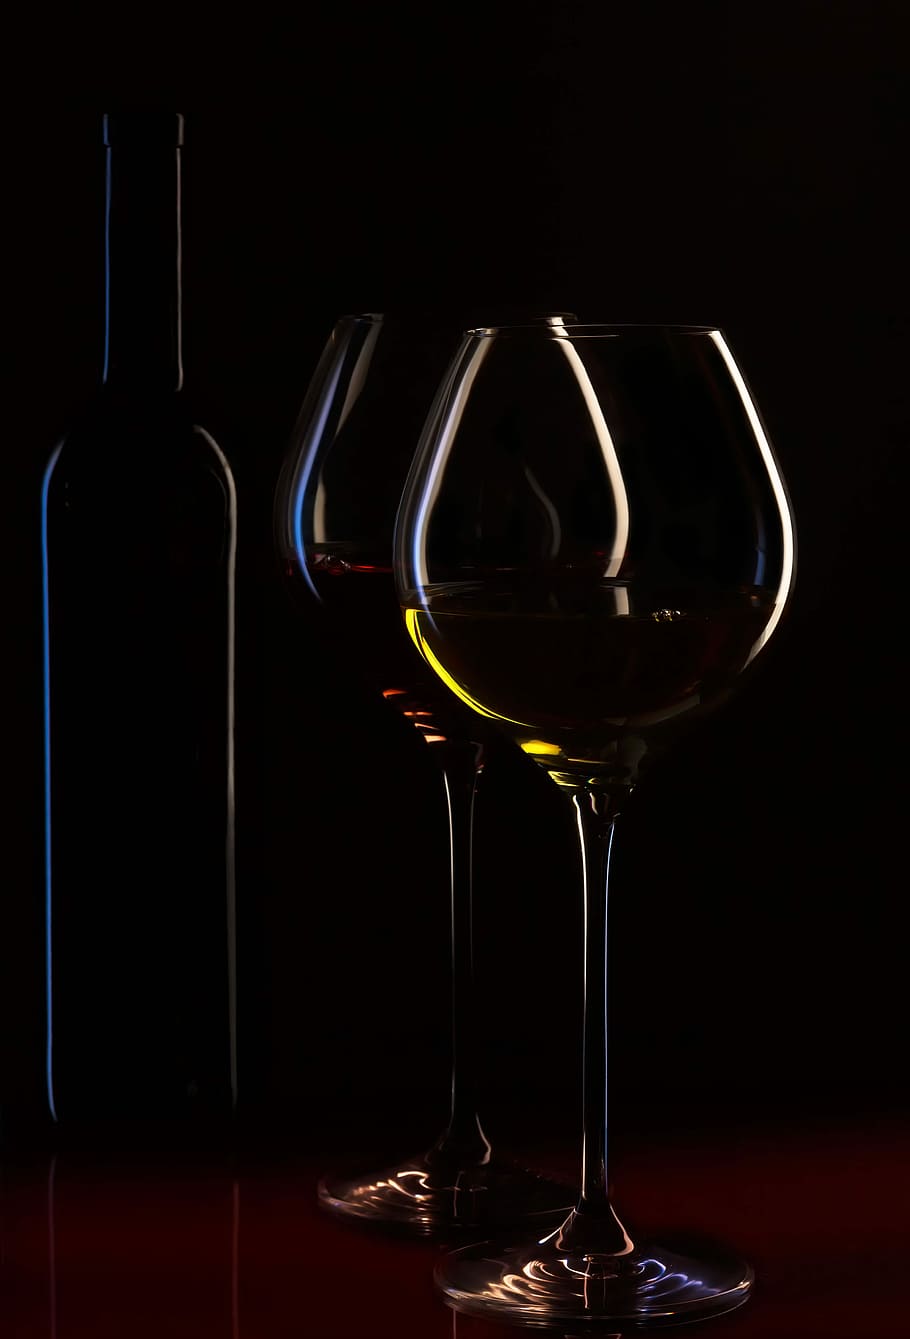 HD wallpaper: Dark wine glasses, bottle, alcohol, wineglass, drink